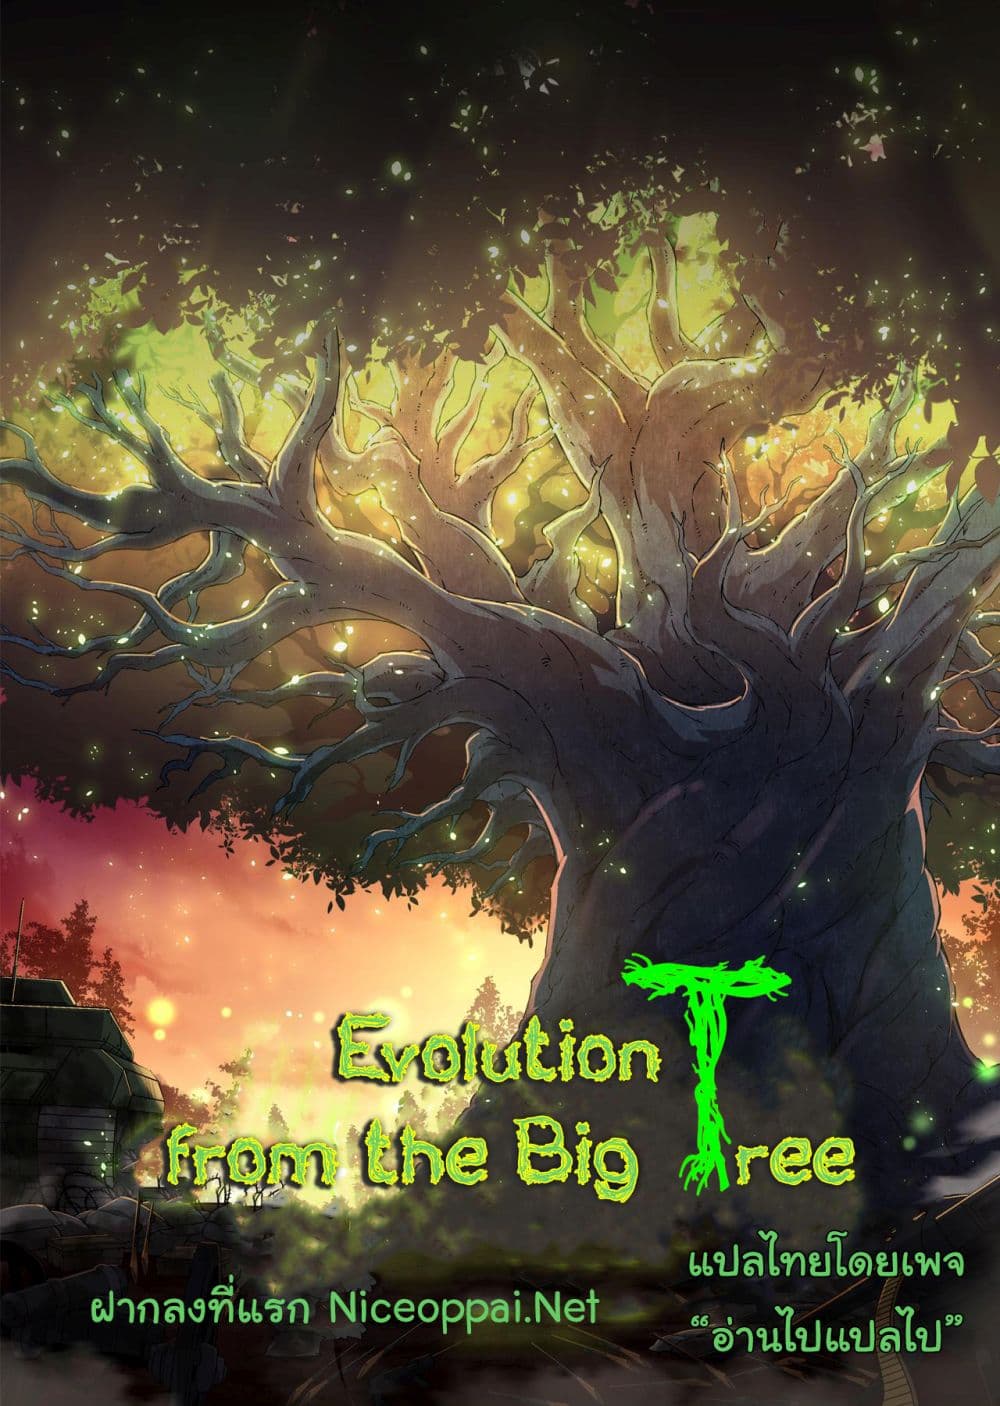 Evolution from the Big Tree Ã Â¸â€¢Ã Â¸Â­Ã Â¸â„¢Ã Â¸â€”Ã Â¸ÂµÃ Â¹Ë† 24 (1)